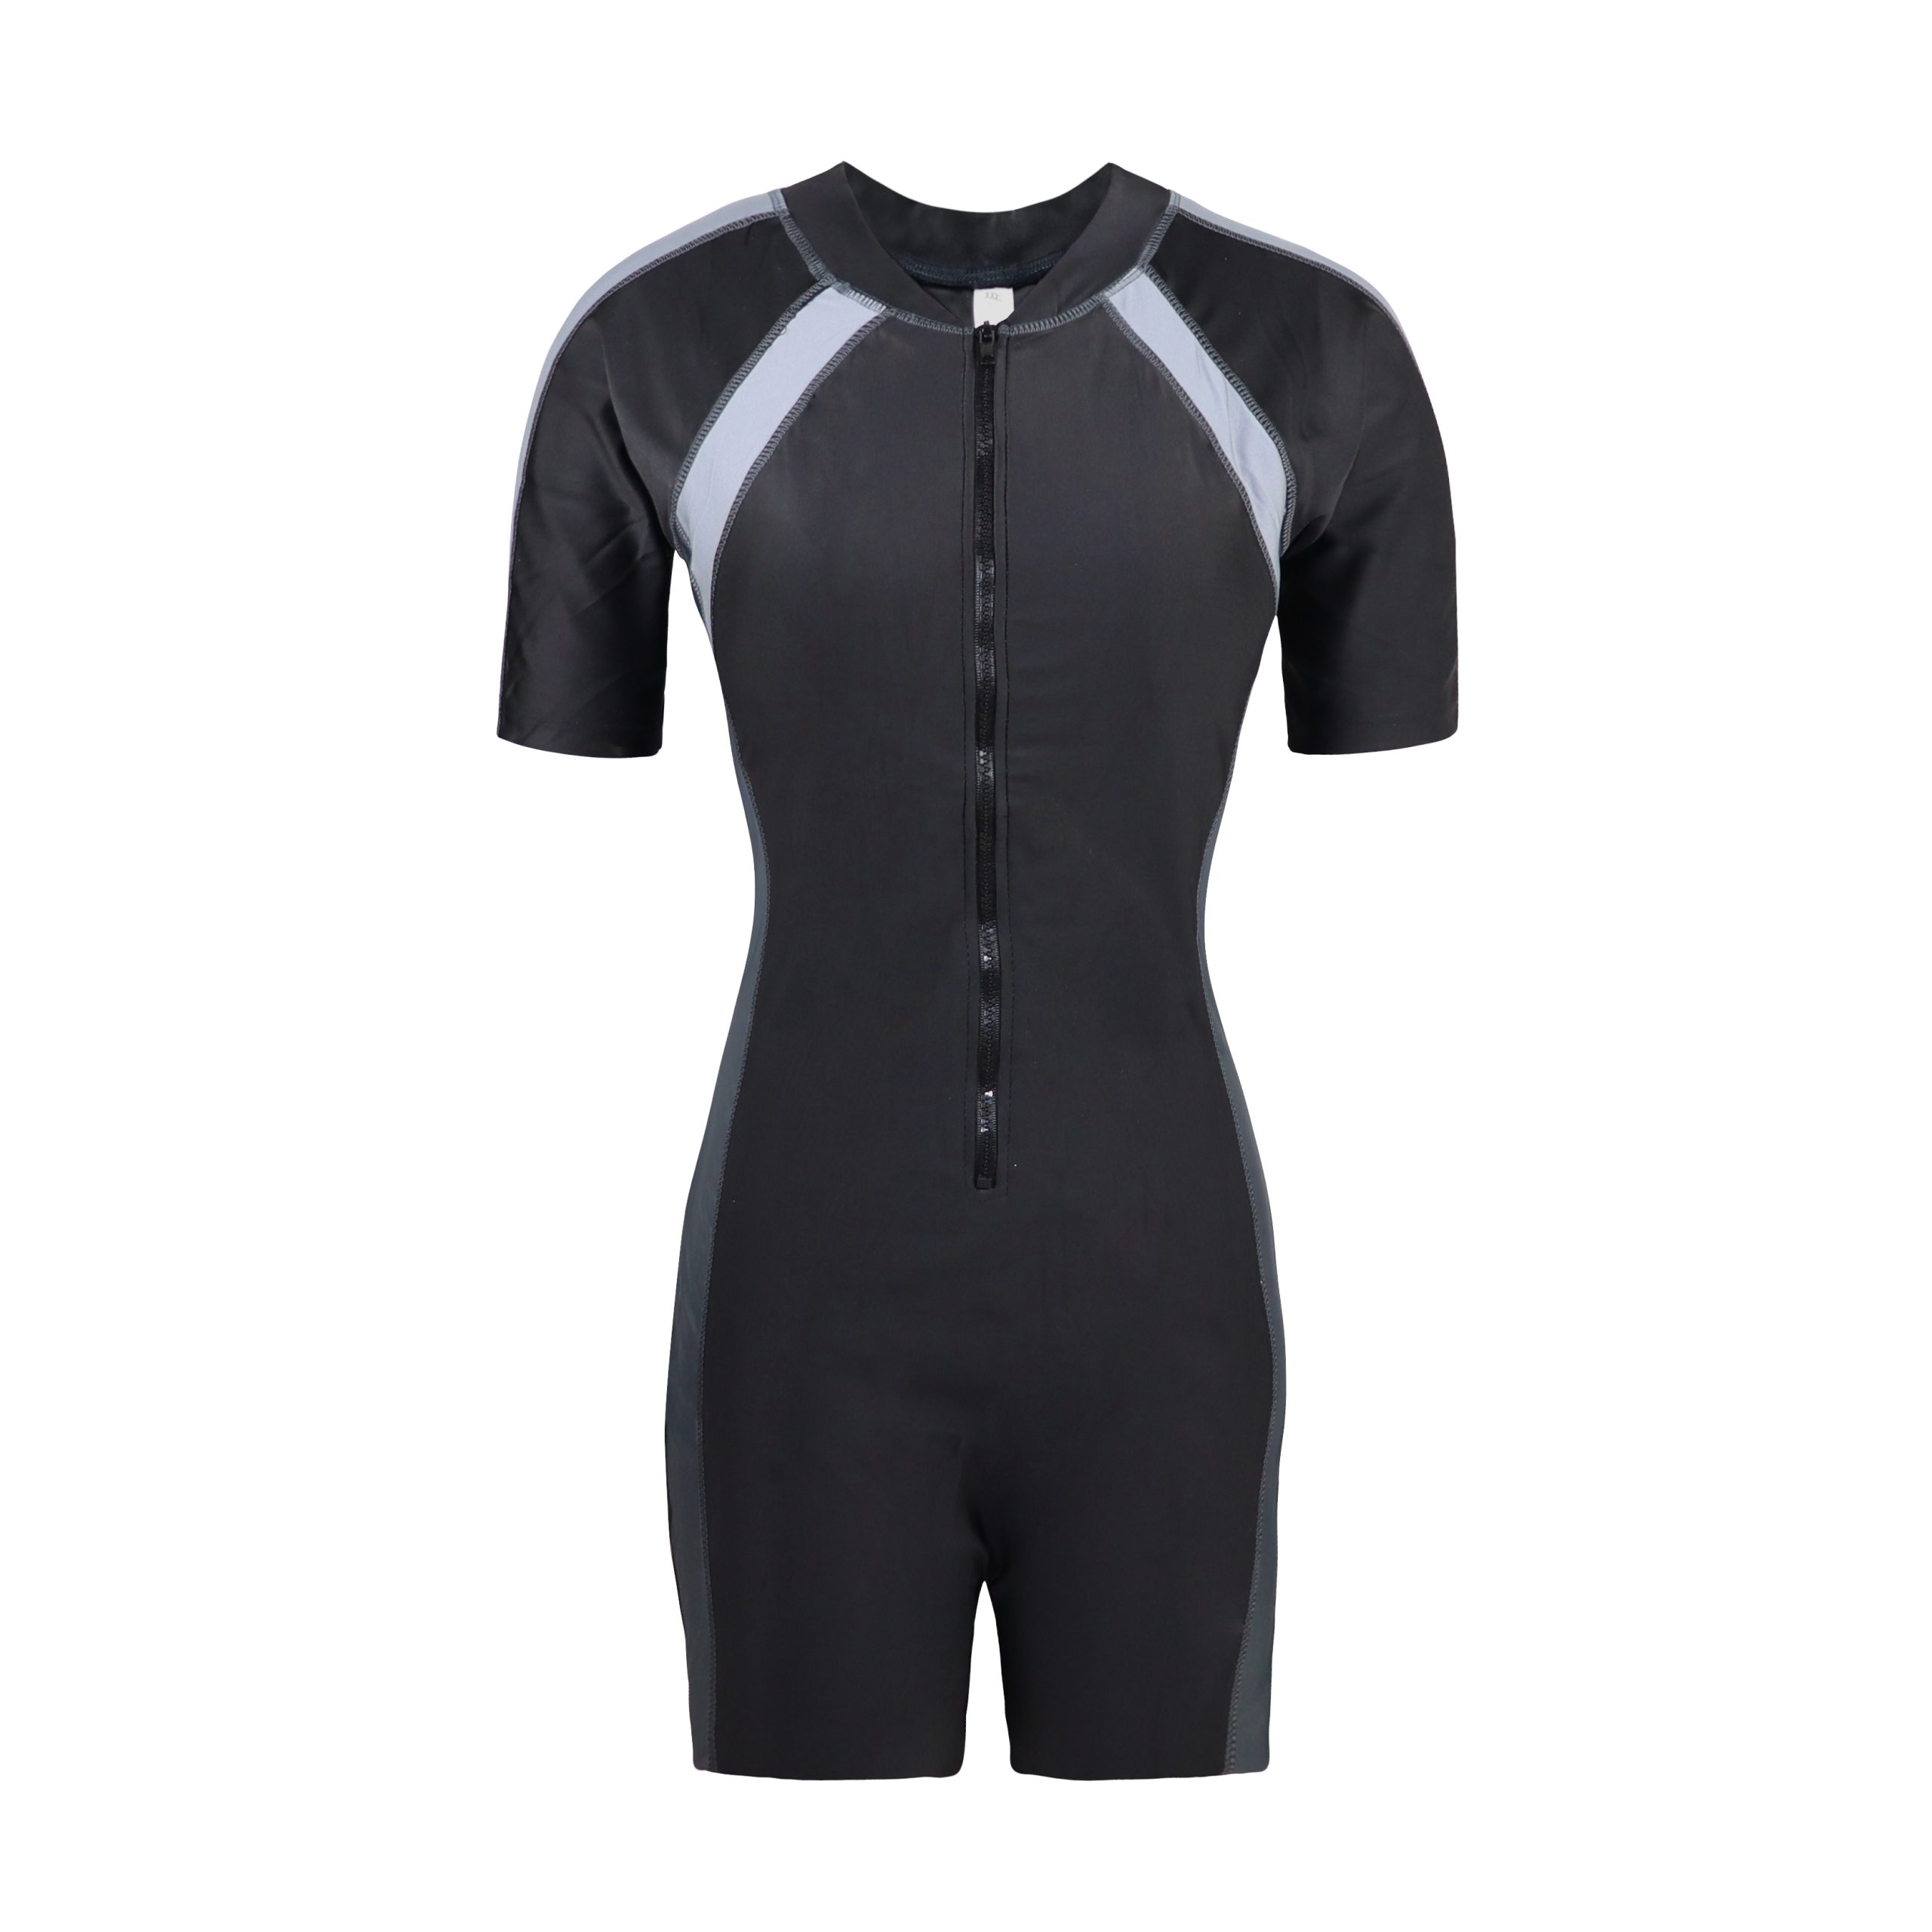 Swim Dress Camato F11802 Black